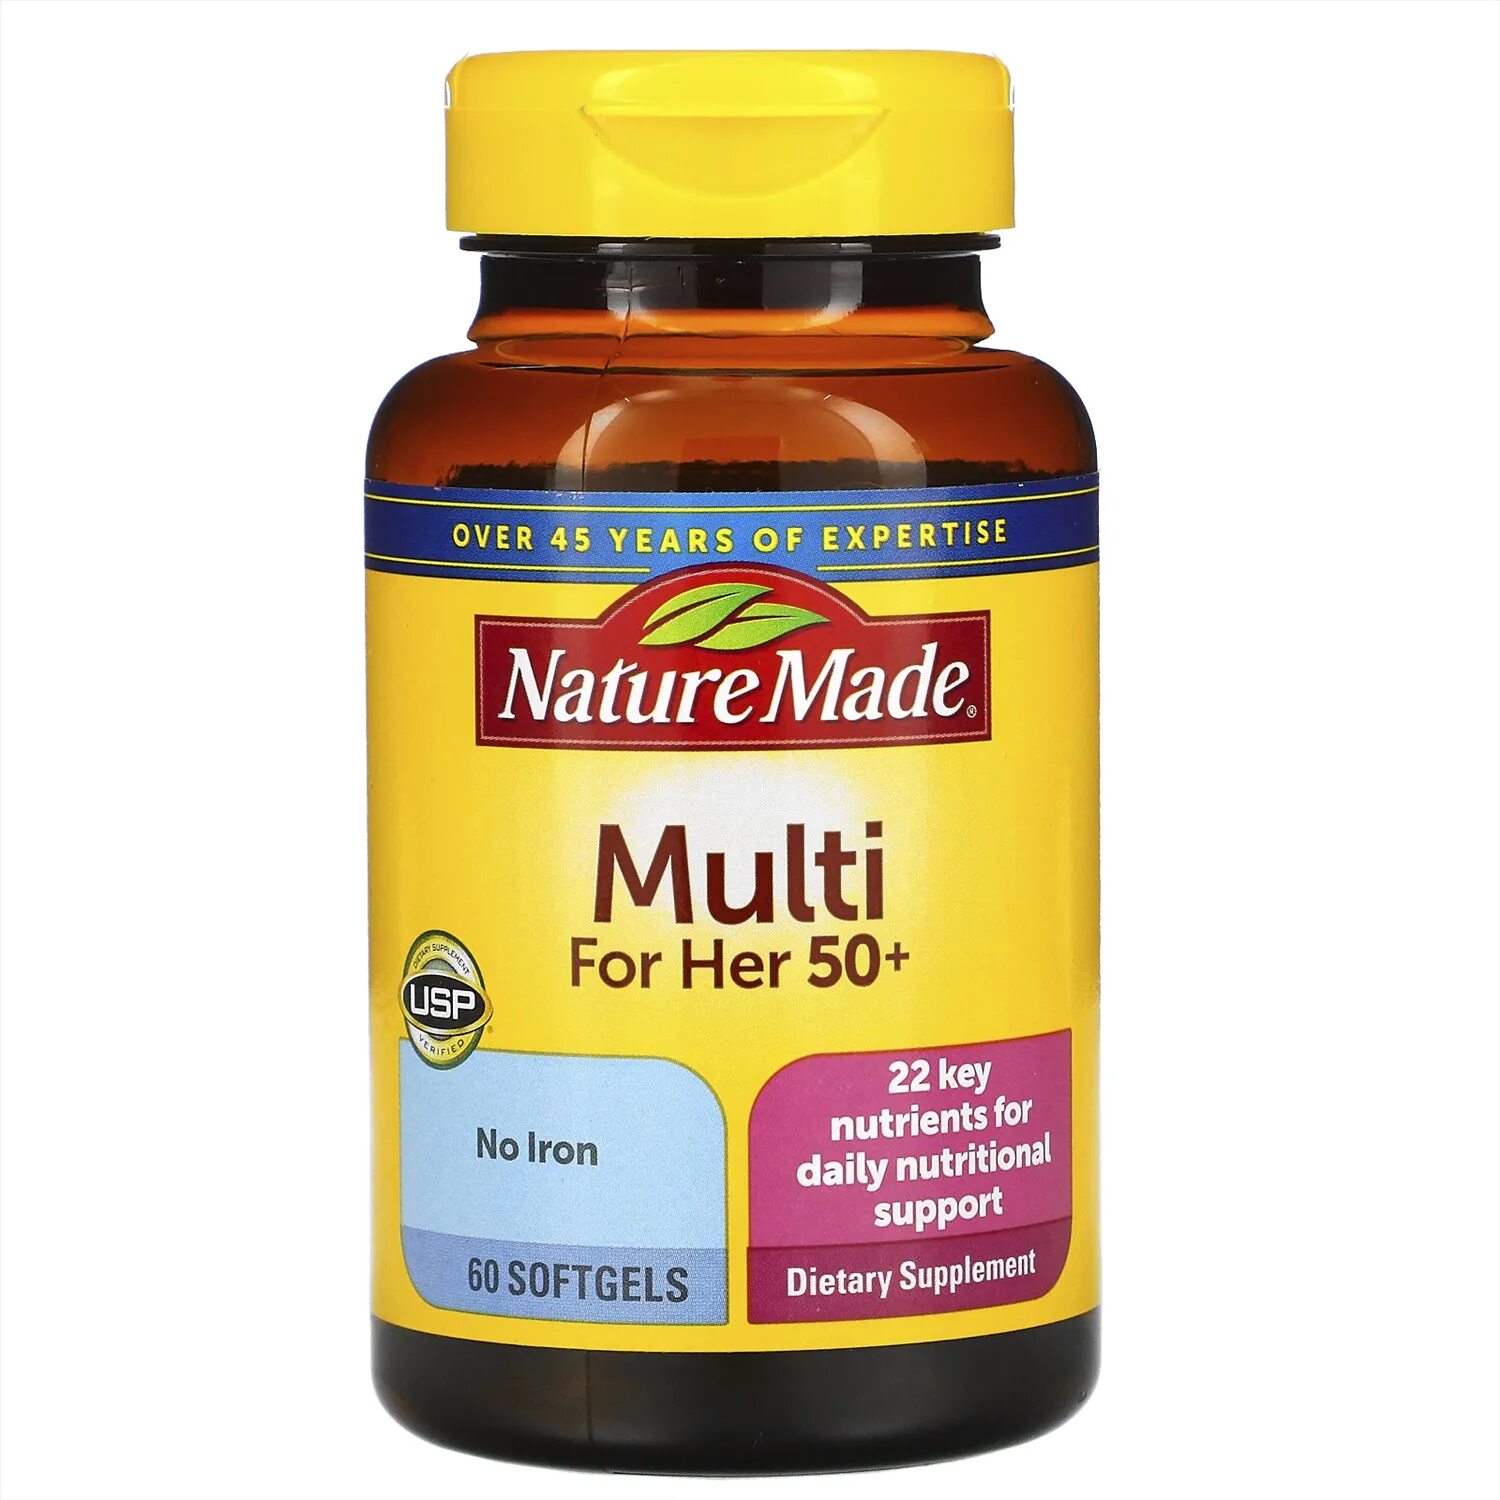 Мультивитамины nature made Multi. Витамины натура. Nature made, Multi для женщин 50+ отзывы. Витамины отзывы. Витамин отзывы покупателей и врачей